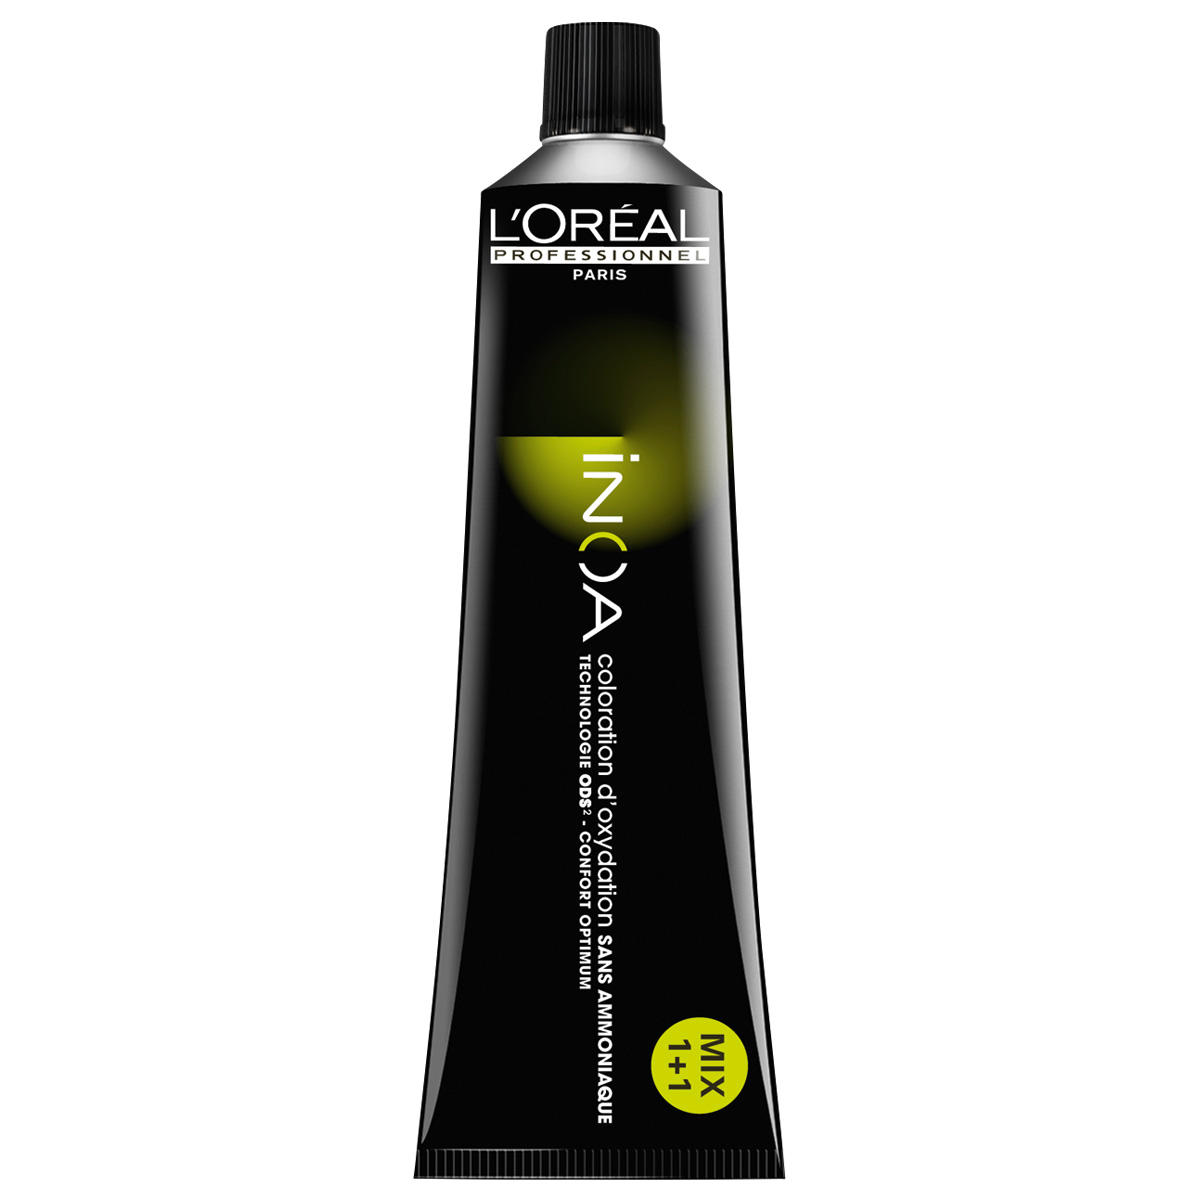 L'Oréal Professionnel Paris Coloration 7.43 Medium Blond Koper Goud, Tube 60 ml